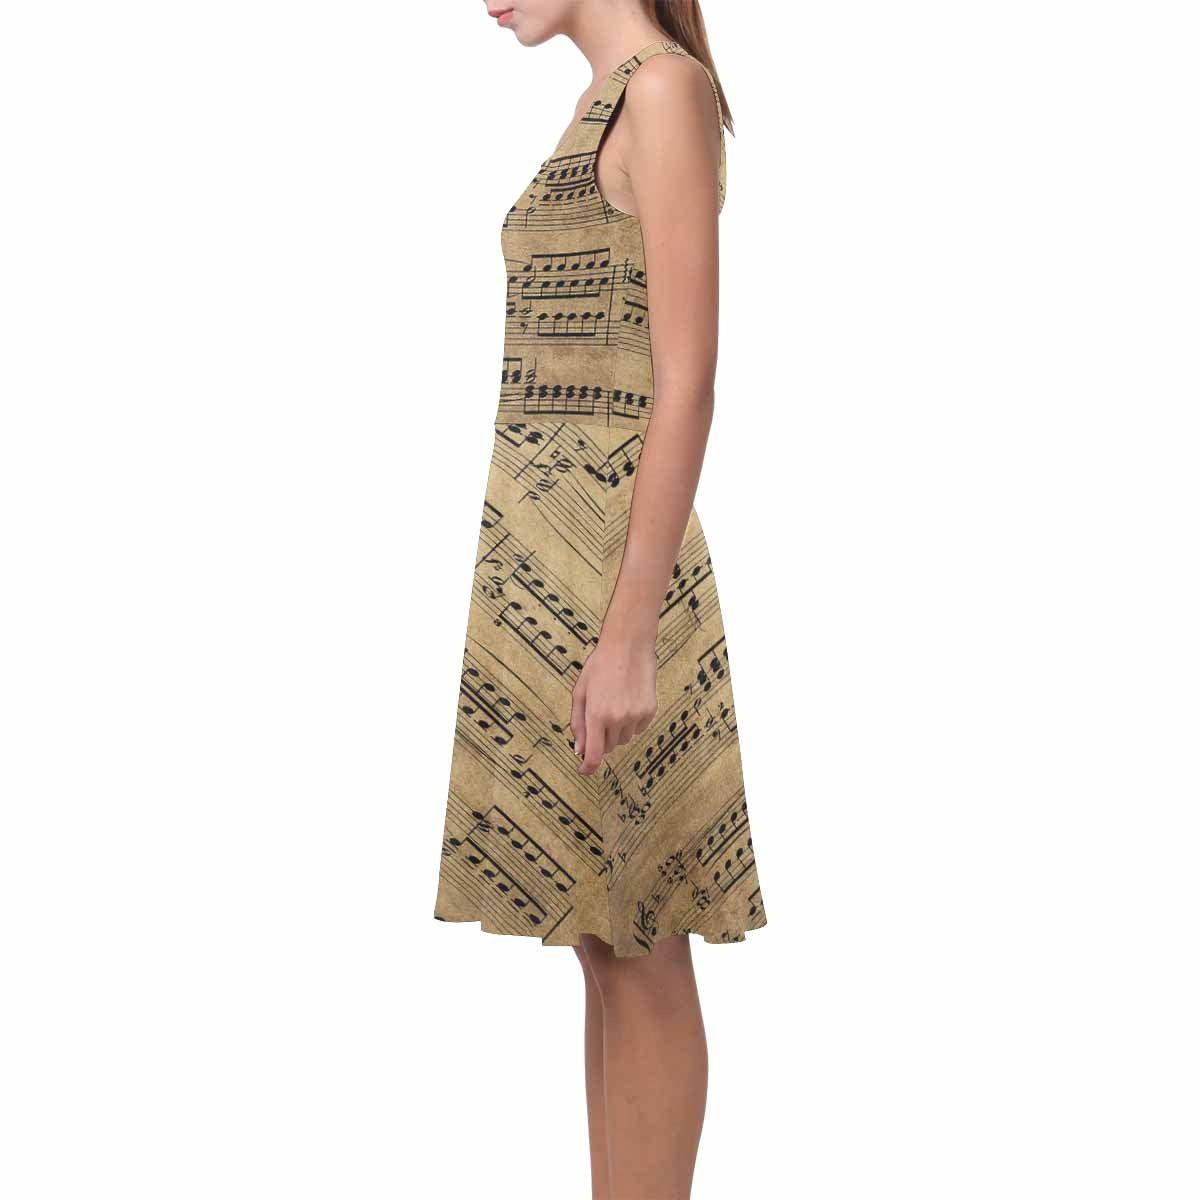 Antique General summer dress, MODEL 09534, design 59